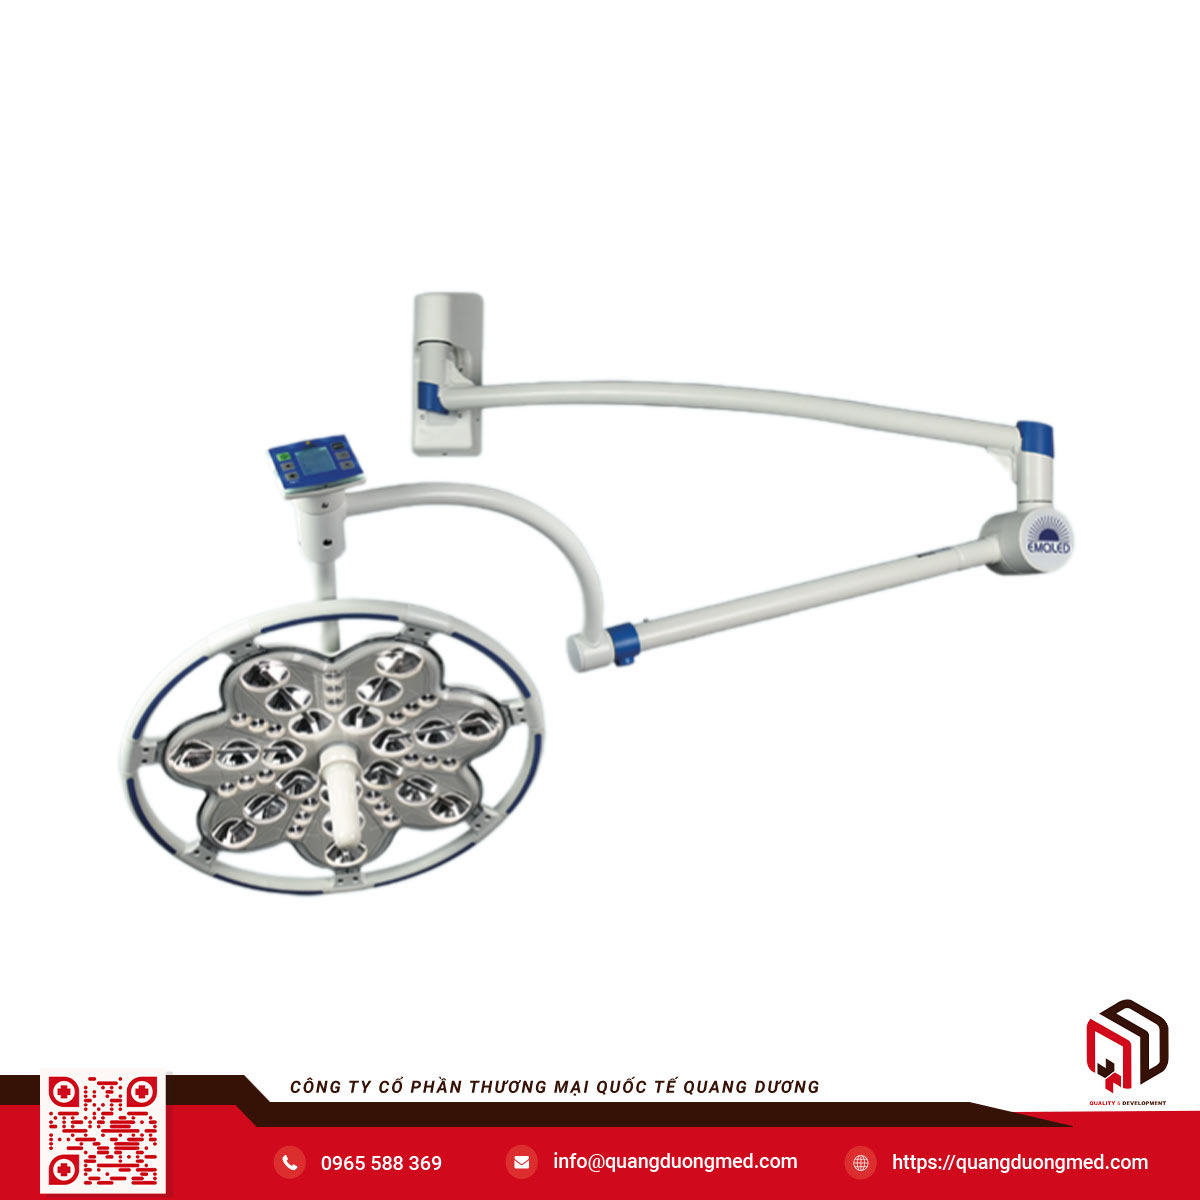 Đèn phẫu thuật gắn tường công suất cao 160.000LUX - Model: EMALED® 300W+